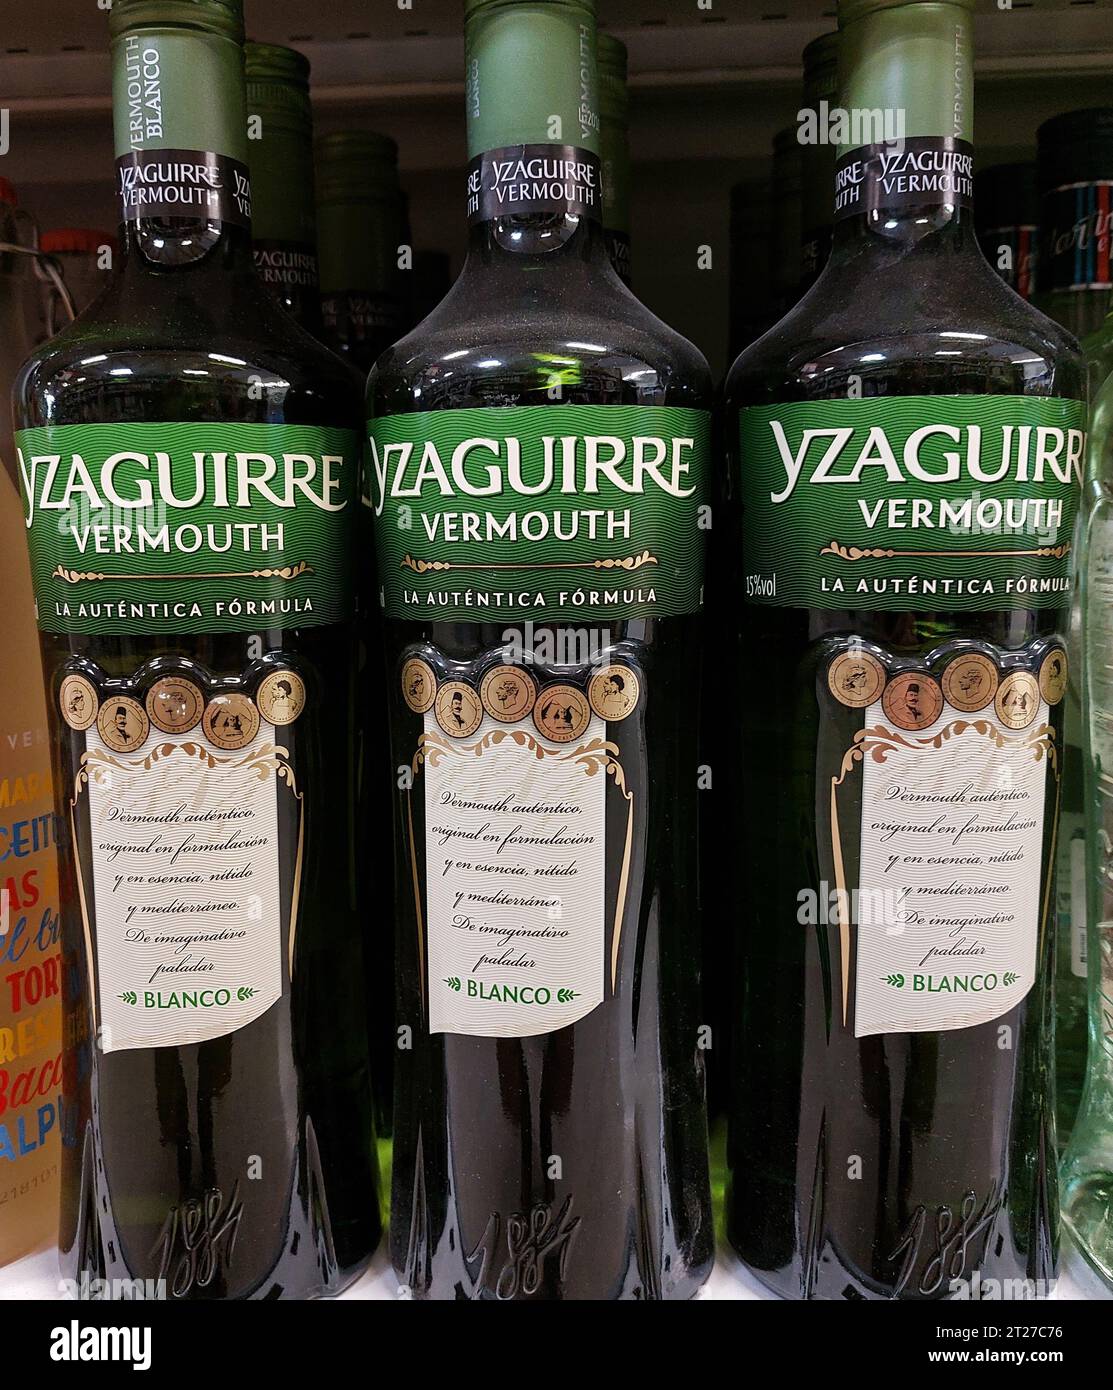 Yzaguirre Vermouth blanco bottiglia in un supermercato Foto Stock